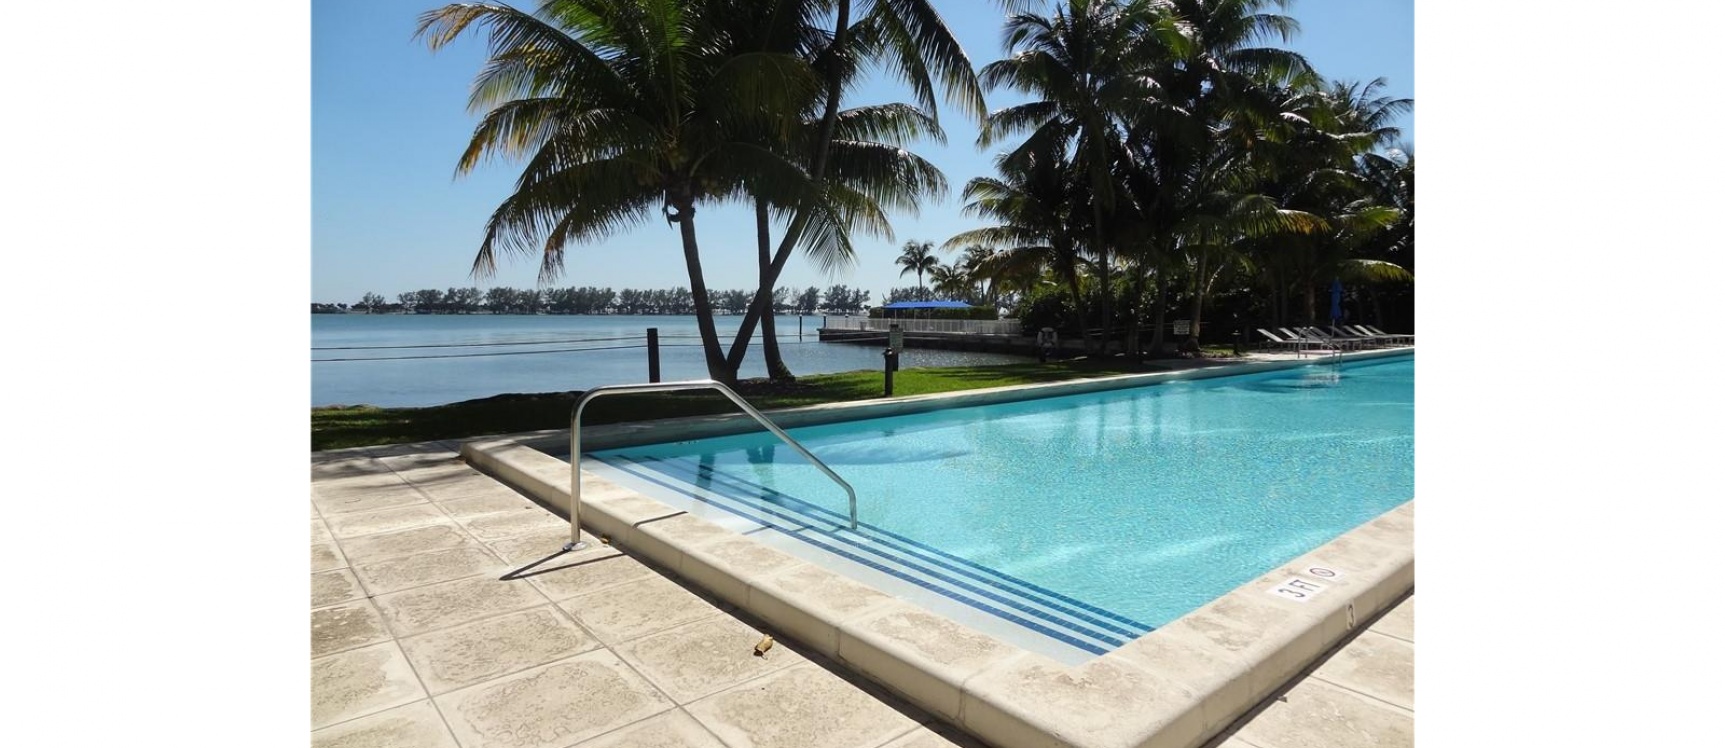 GeoBienes - Departamento de venta en Miami, Atlantis en BRICKELL - Plusvalia Guayaquil Casas de venta y alquiler Inmobiliaria Ecuador